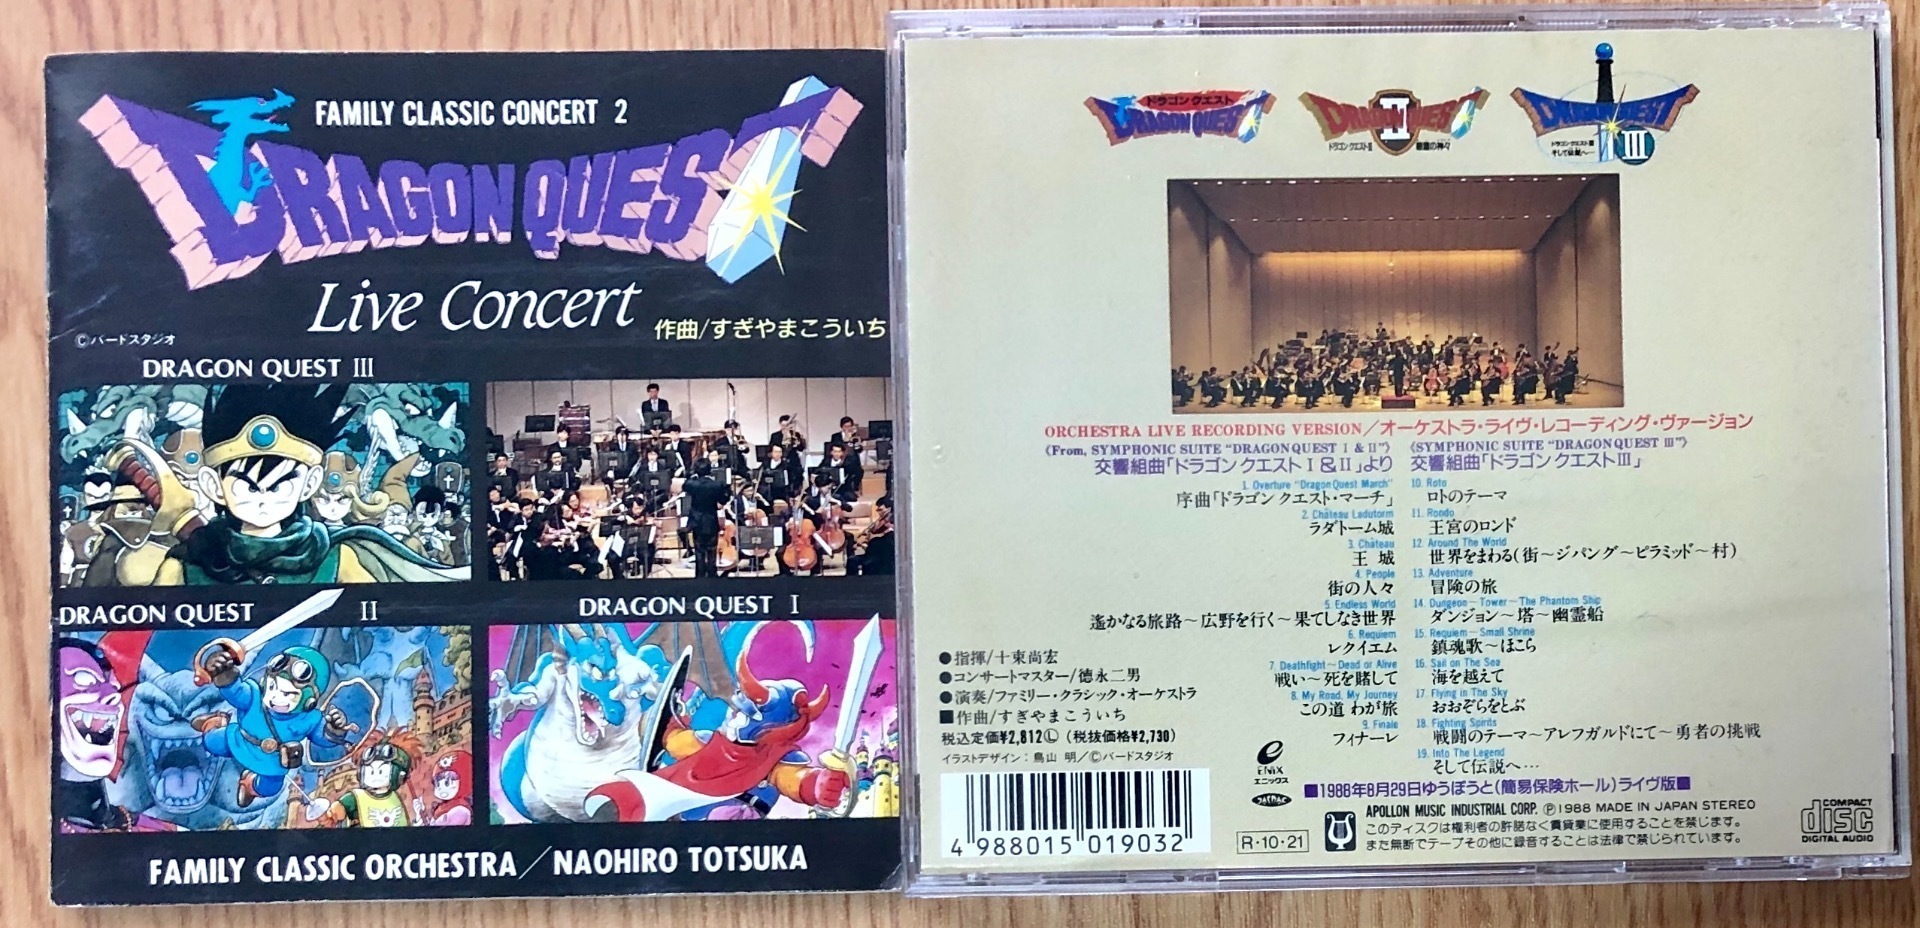 1988年の貴重なライヴ音源～NHK交響楽団のメンバーによるドラゴンクエスト・ライヴ・コンサート: こだわりの挽きたてクラシックカフェ